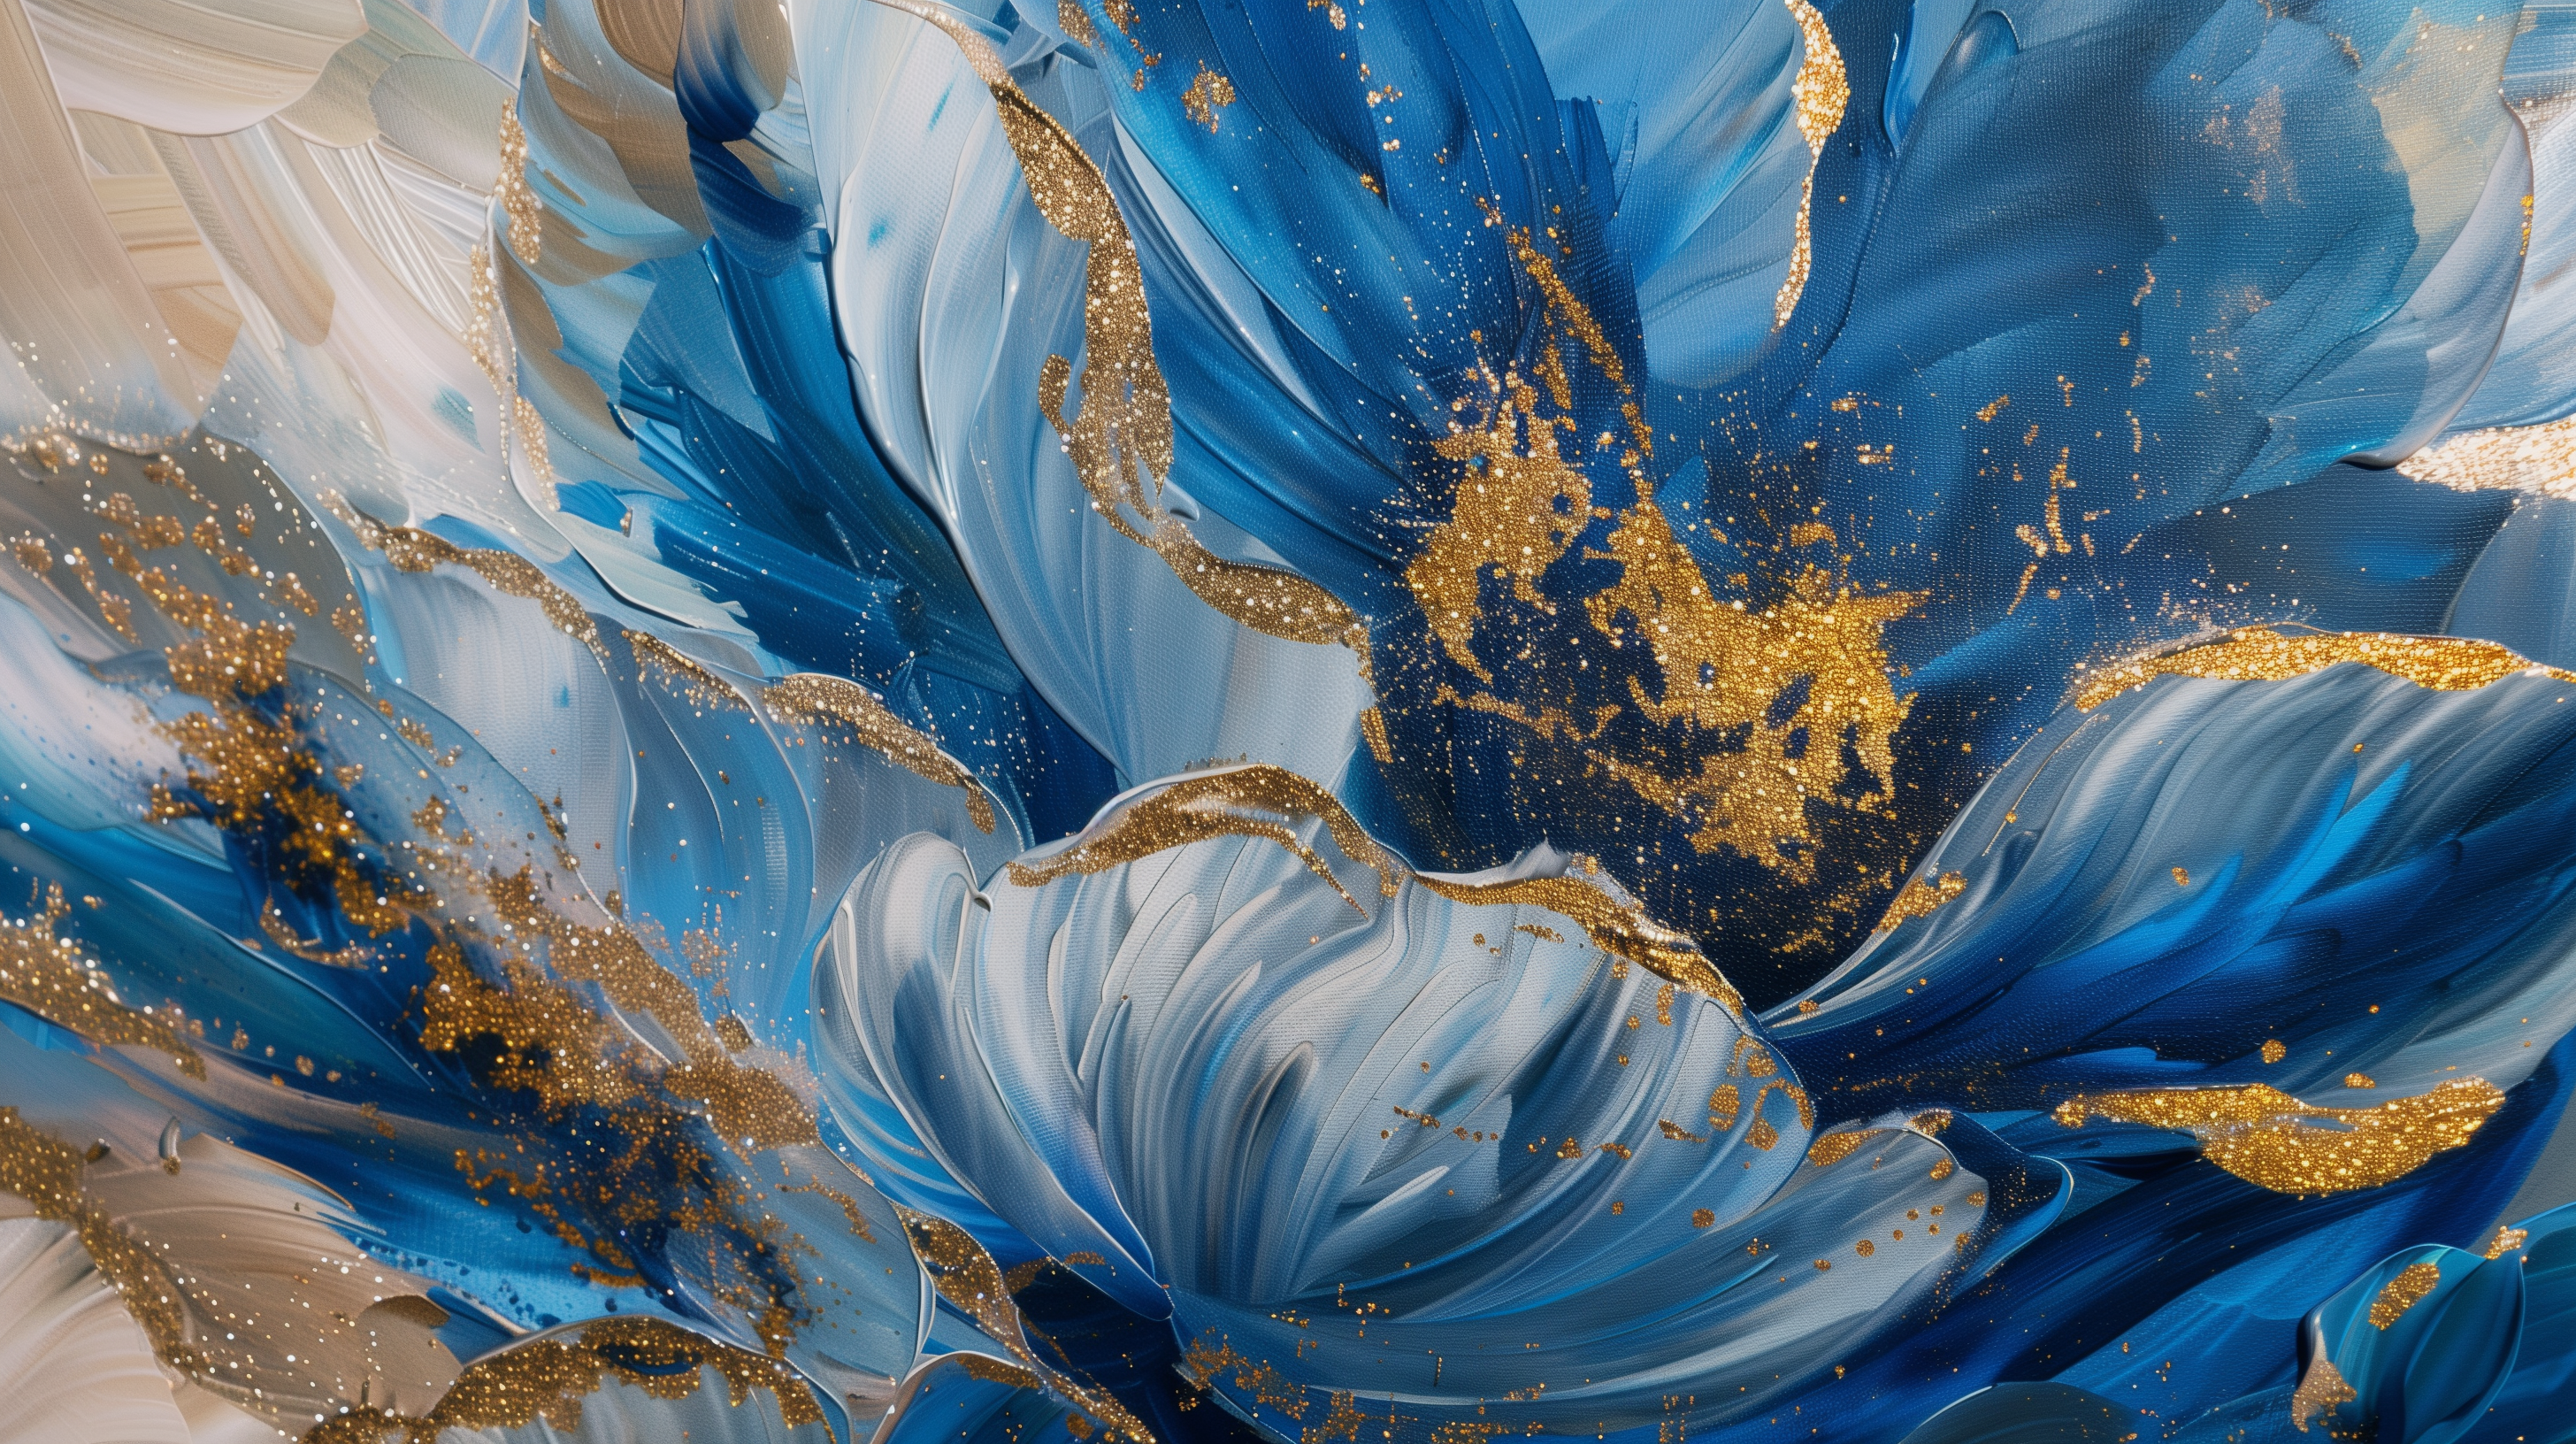 Obraz –  Modré Kvety Abstrakcia – AiArt 16:9